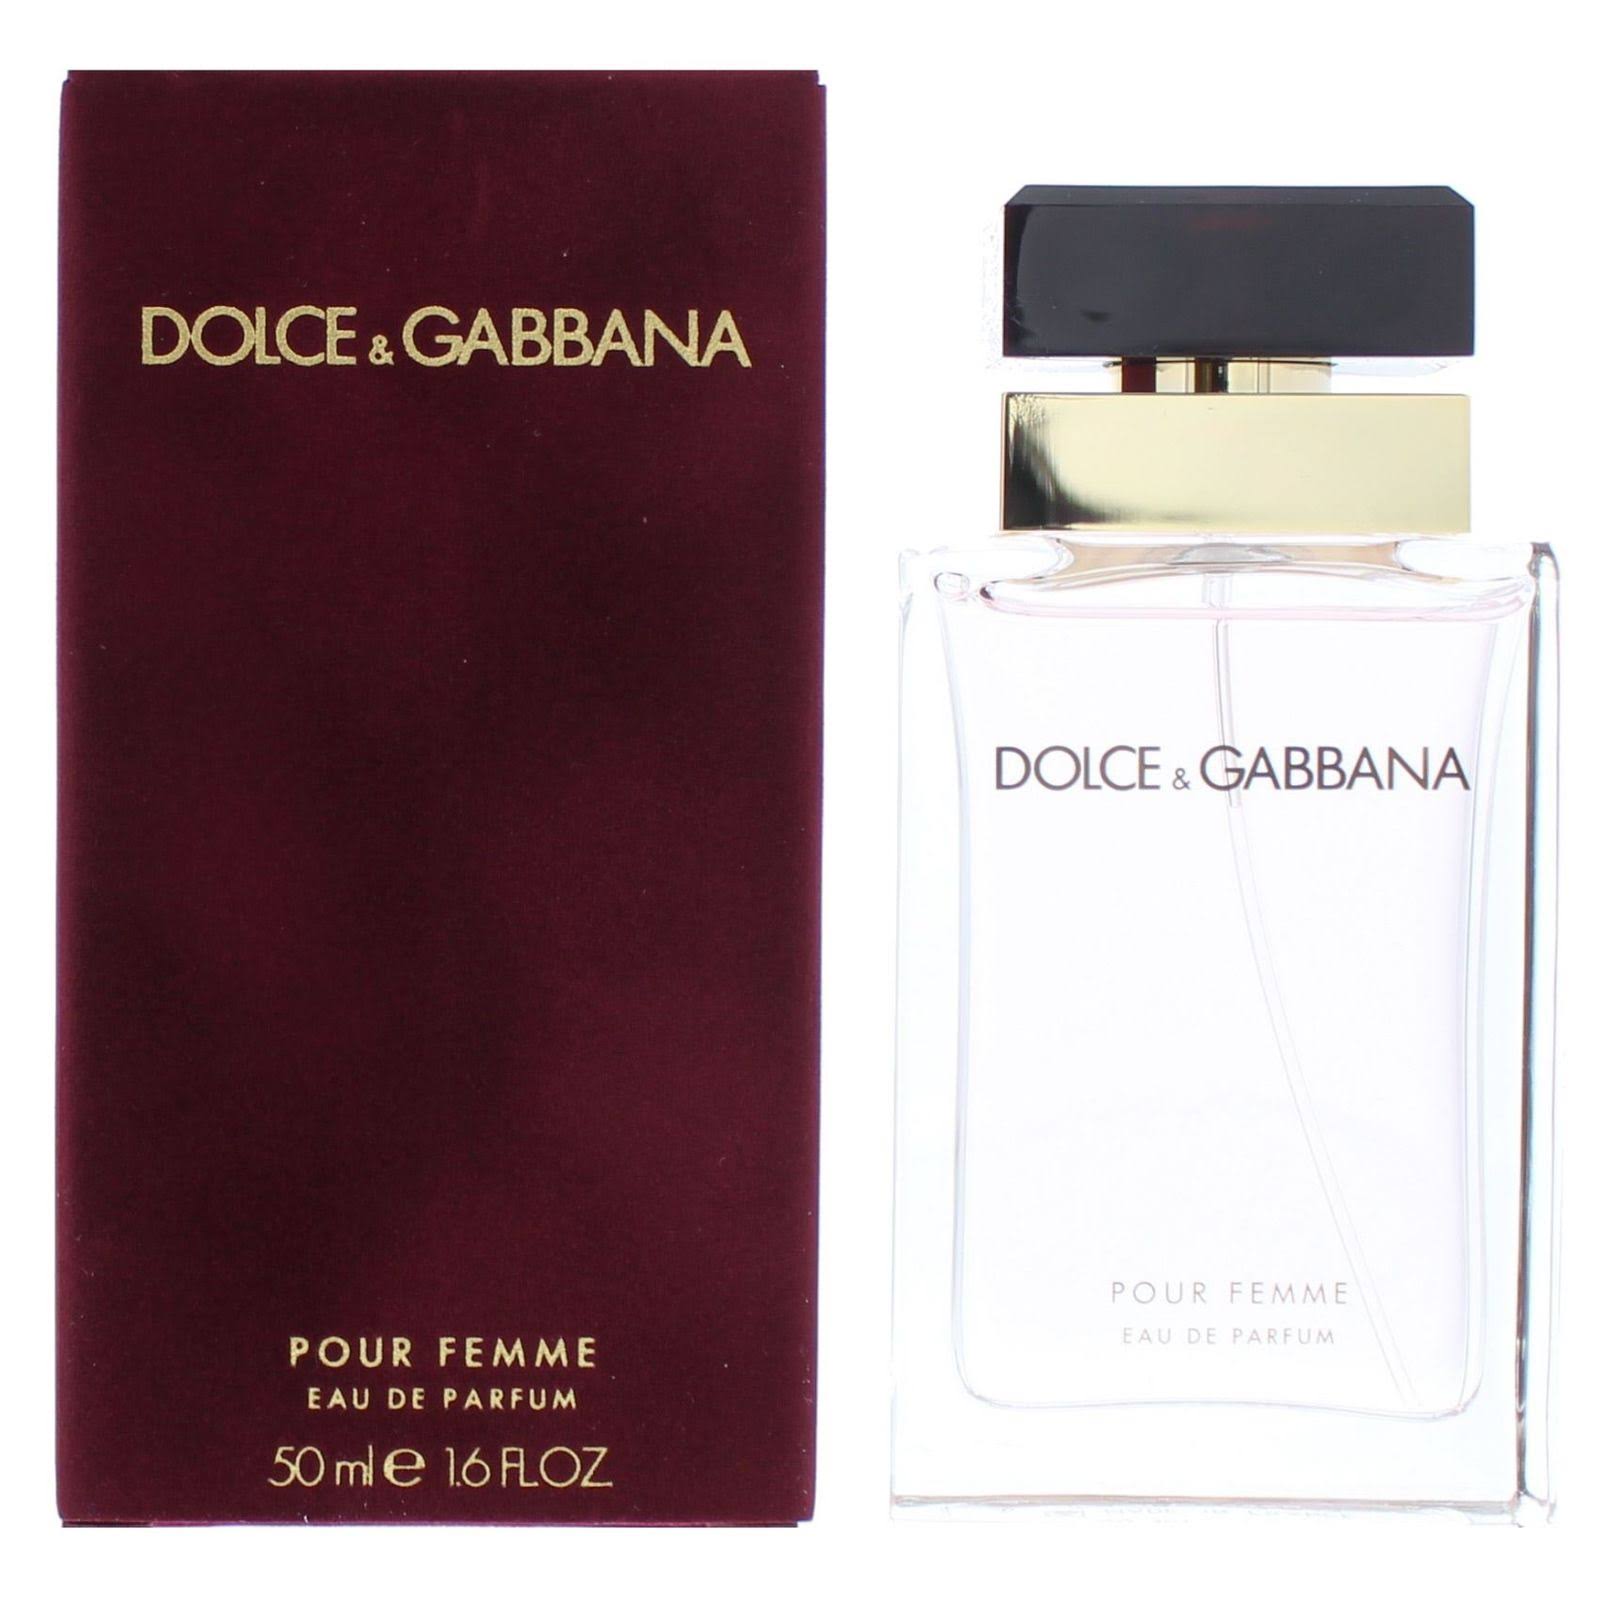 Dolce & Gabbana Pour Femme for Women Eau de Parfum - 50ml